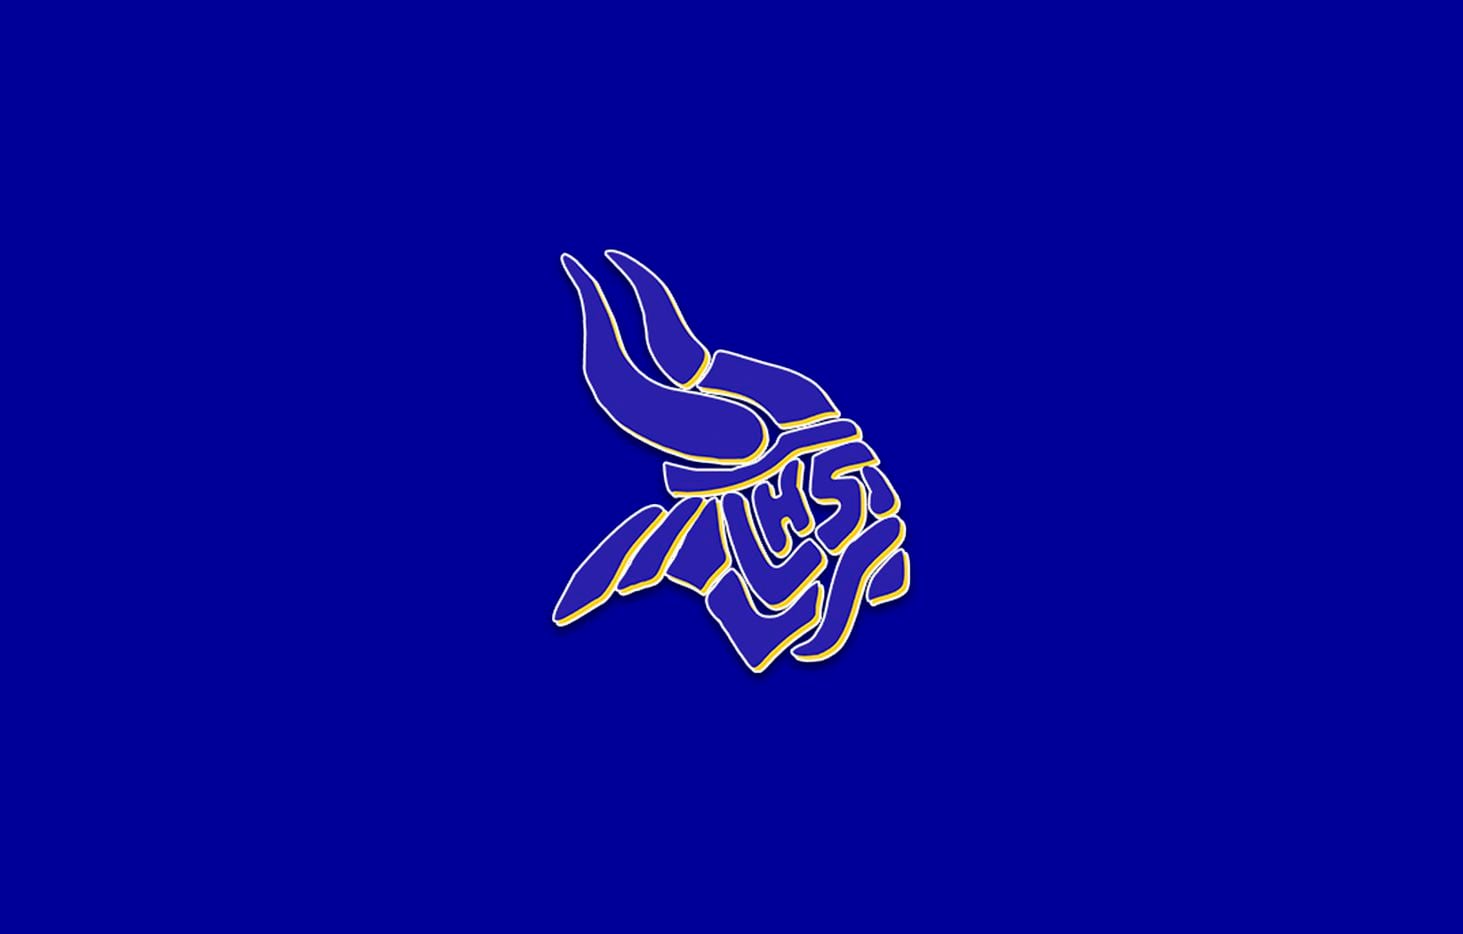 Arlington Lamar logo.